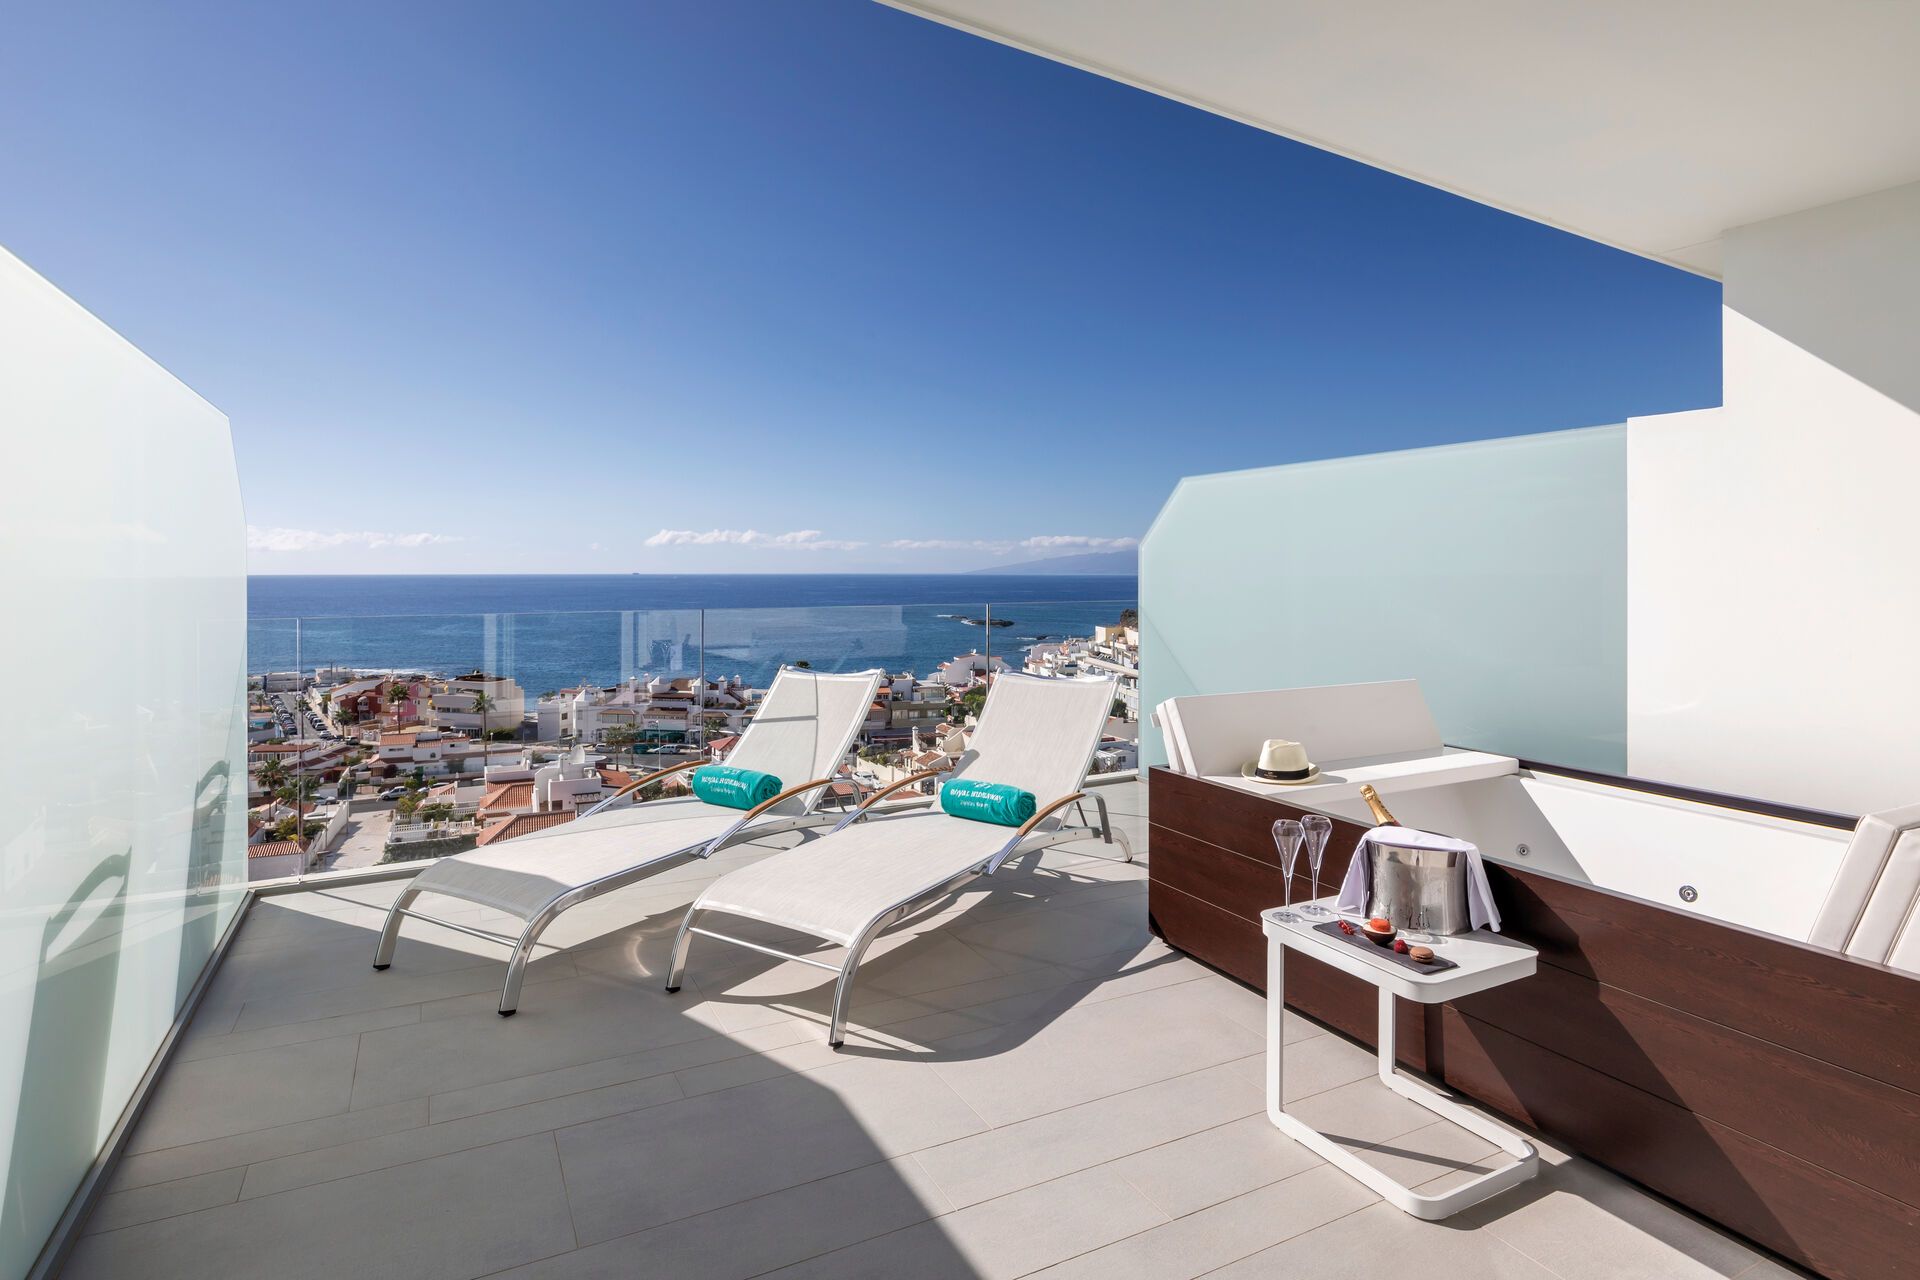 Canaries - Tenerife - Espagne - Hôtel Royal Hideaway Corales Beach 5*